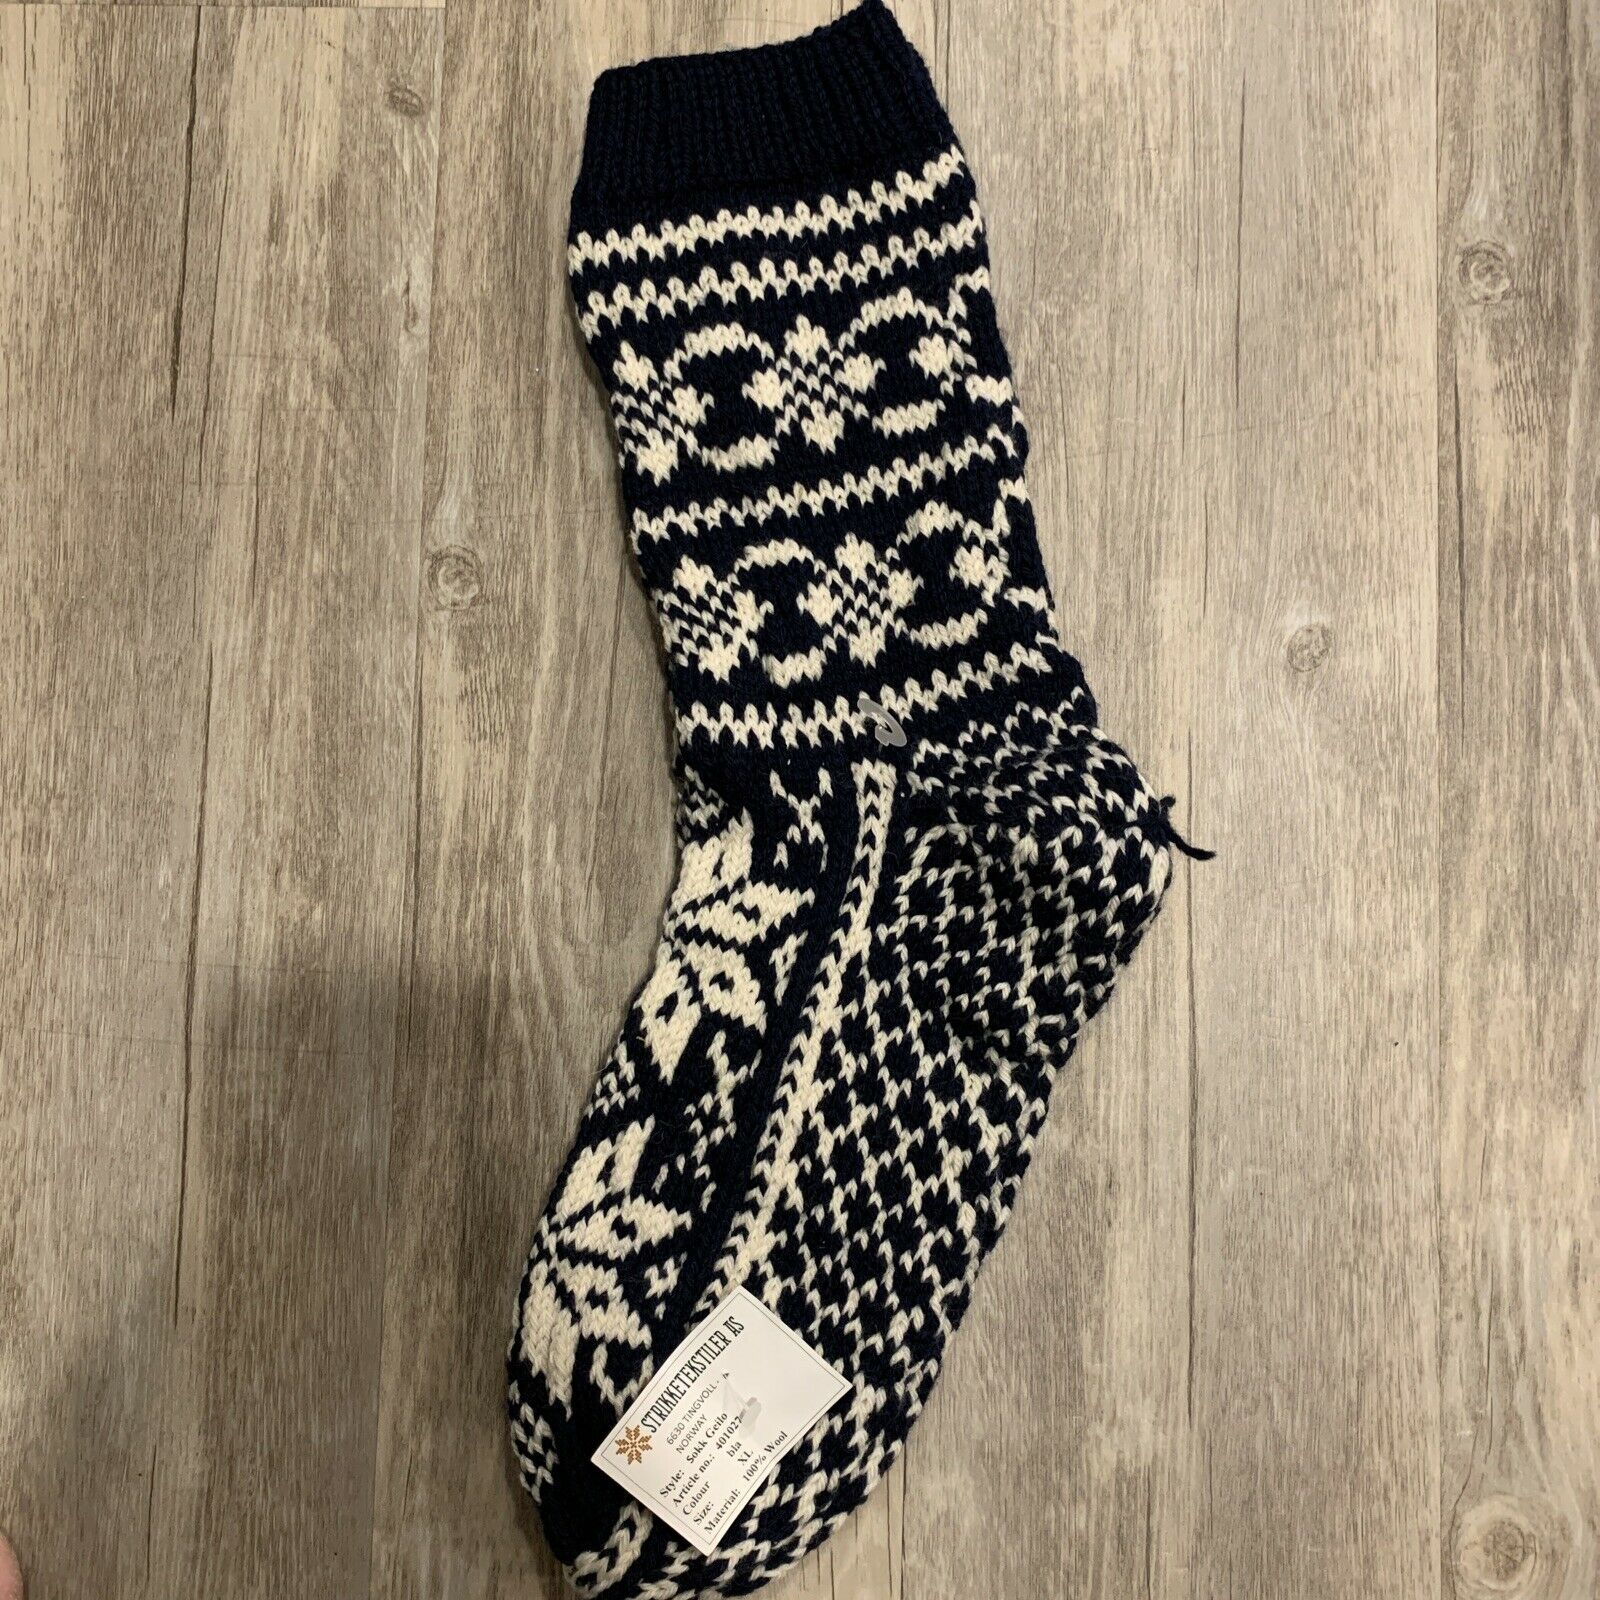 Authentic Norwegian Socks - Handknit, 100% Wool, Navy Blue & White - One New. B1